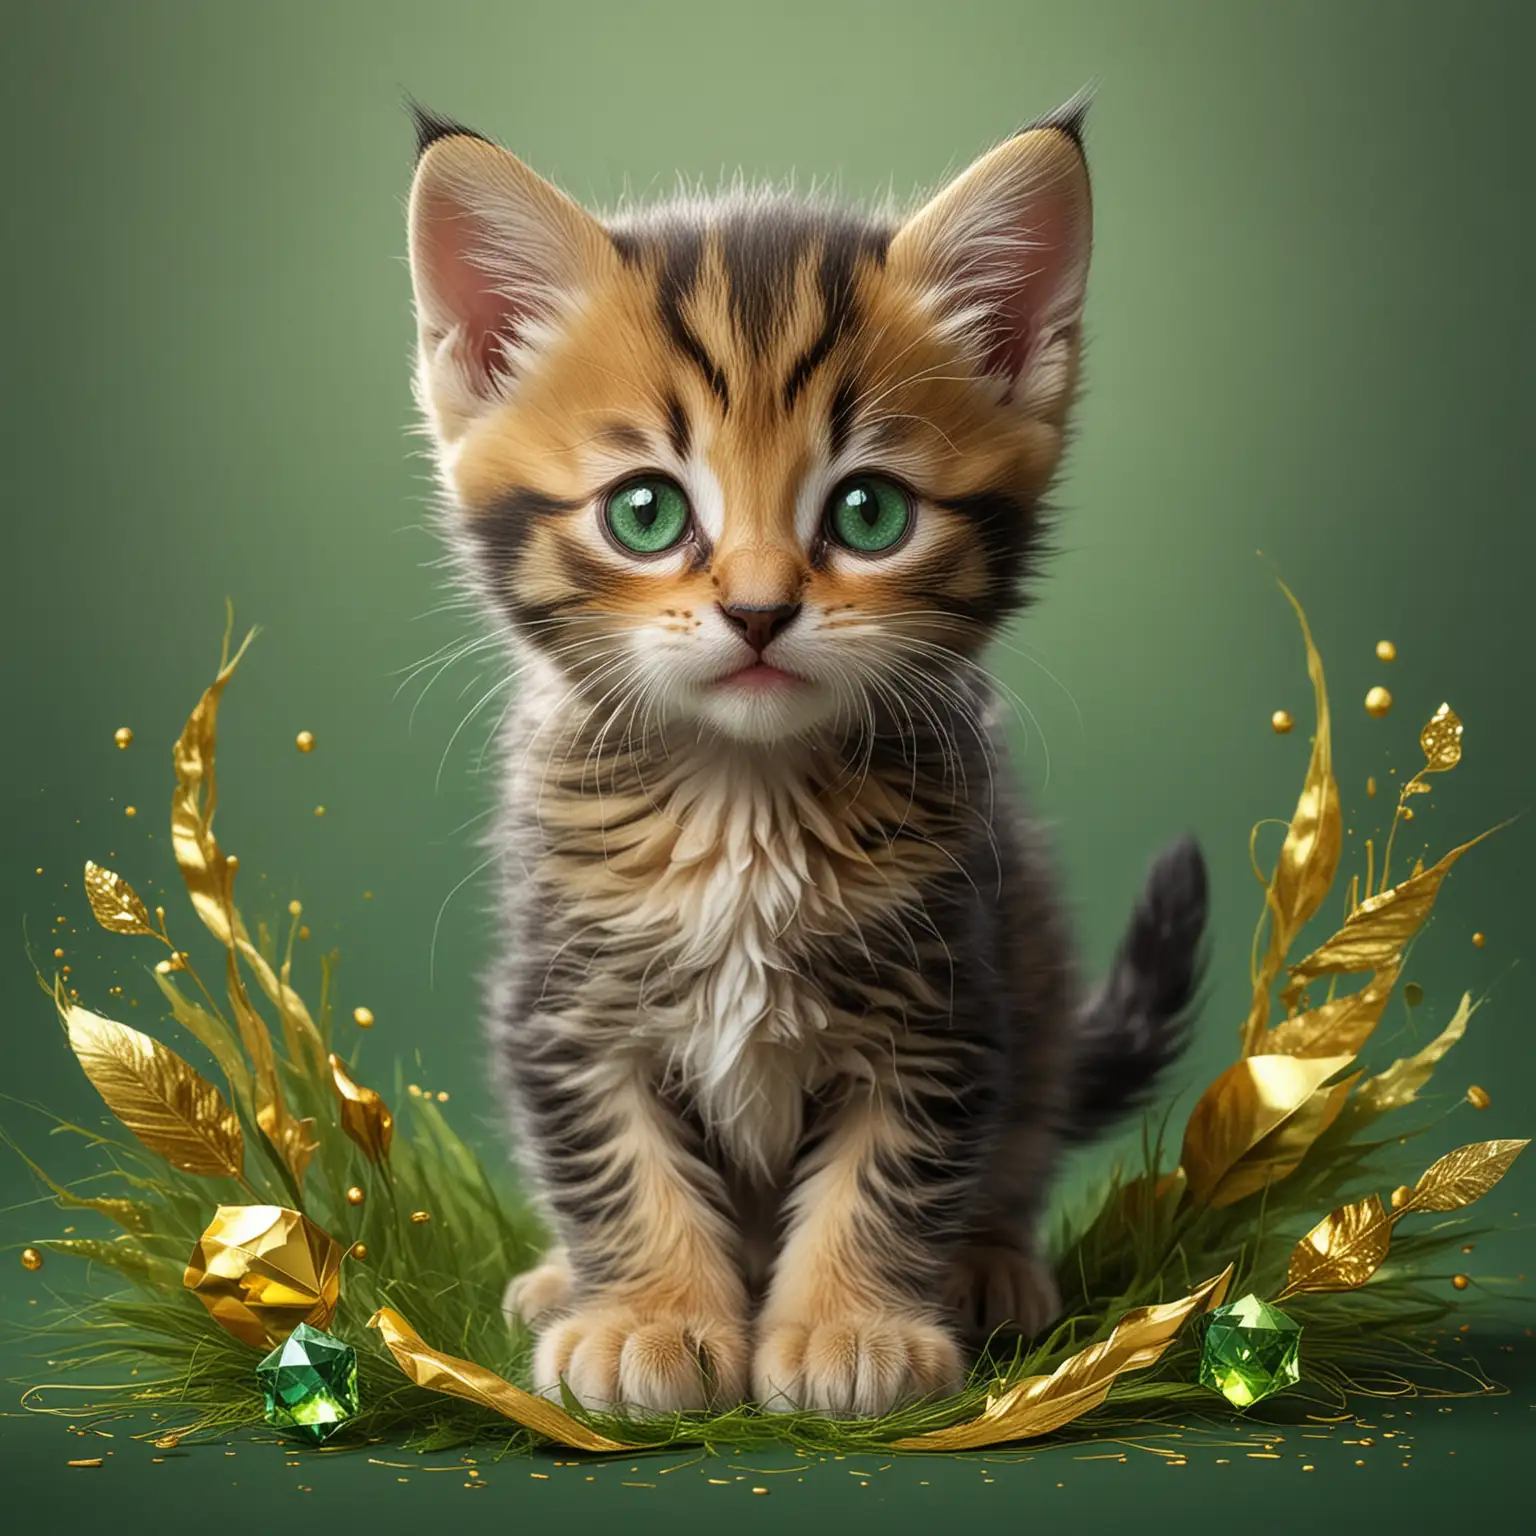 Diseña una imagen de un gatito pequeño y amigable, con colores brillantes como el verde esmeralda y el dorado, con una expresión feliz y juguetona